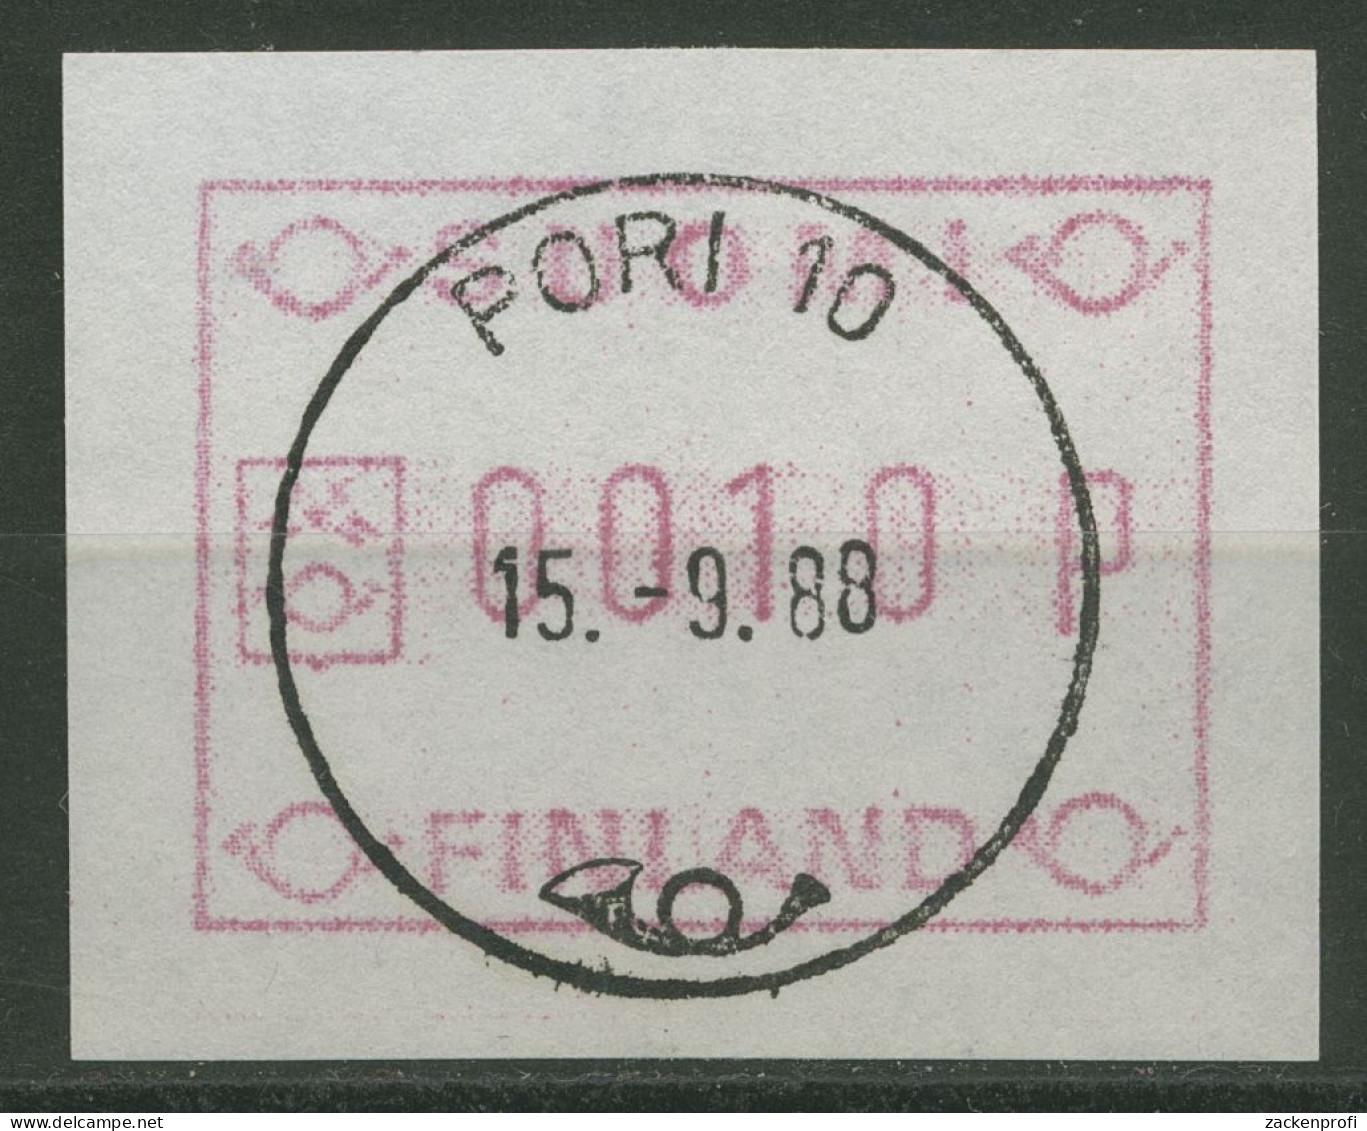 Finnland ATM 1982 Kl. Posthörner Einzelwert Weißes Papier ATM 1.1 XI Gestempelt - Timbres De Distributeurs [ATM]